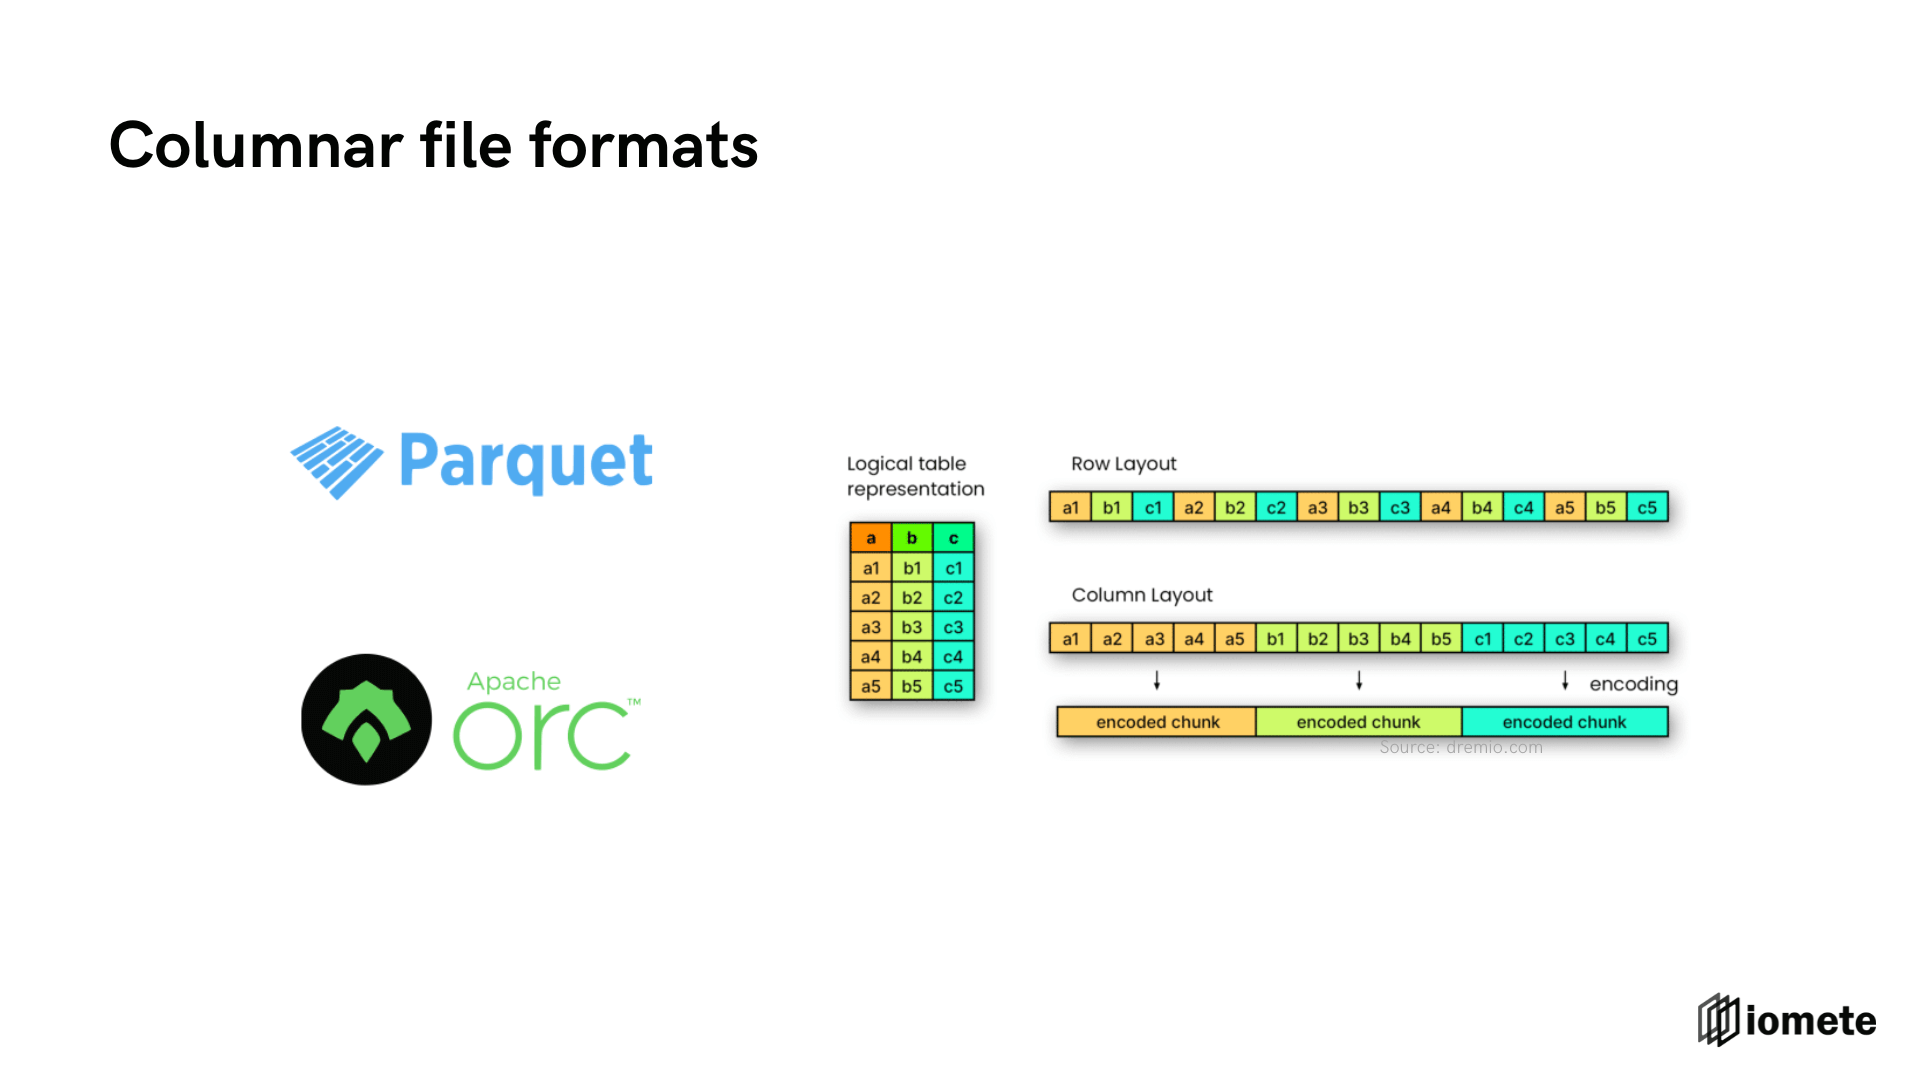 Columnar file formats - Apache Parquet - Apache ORC